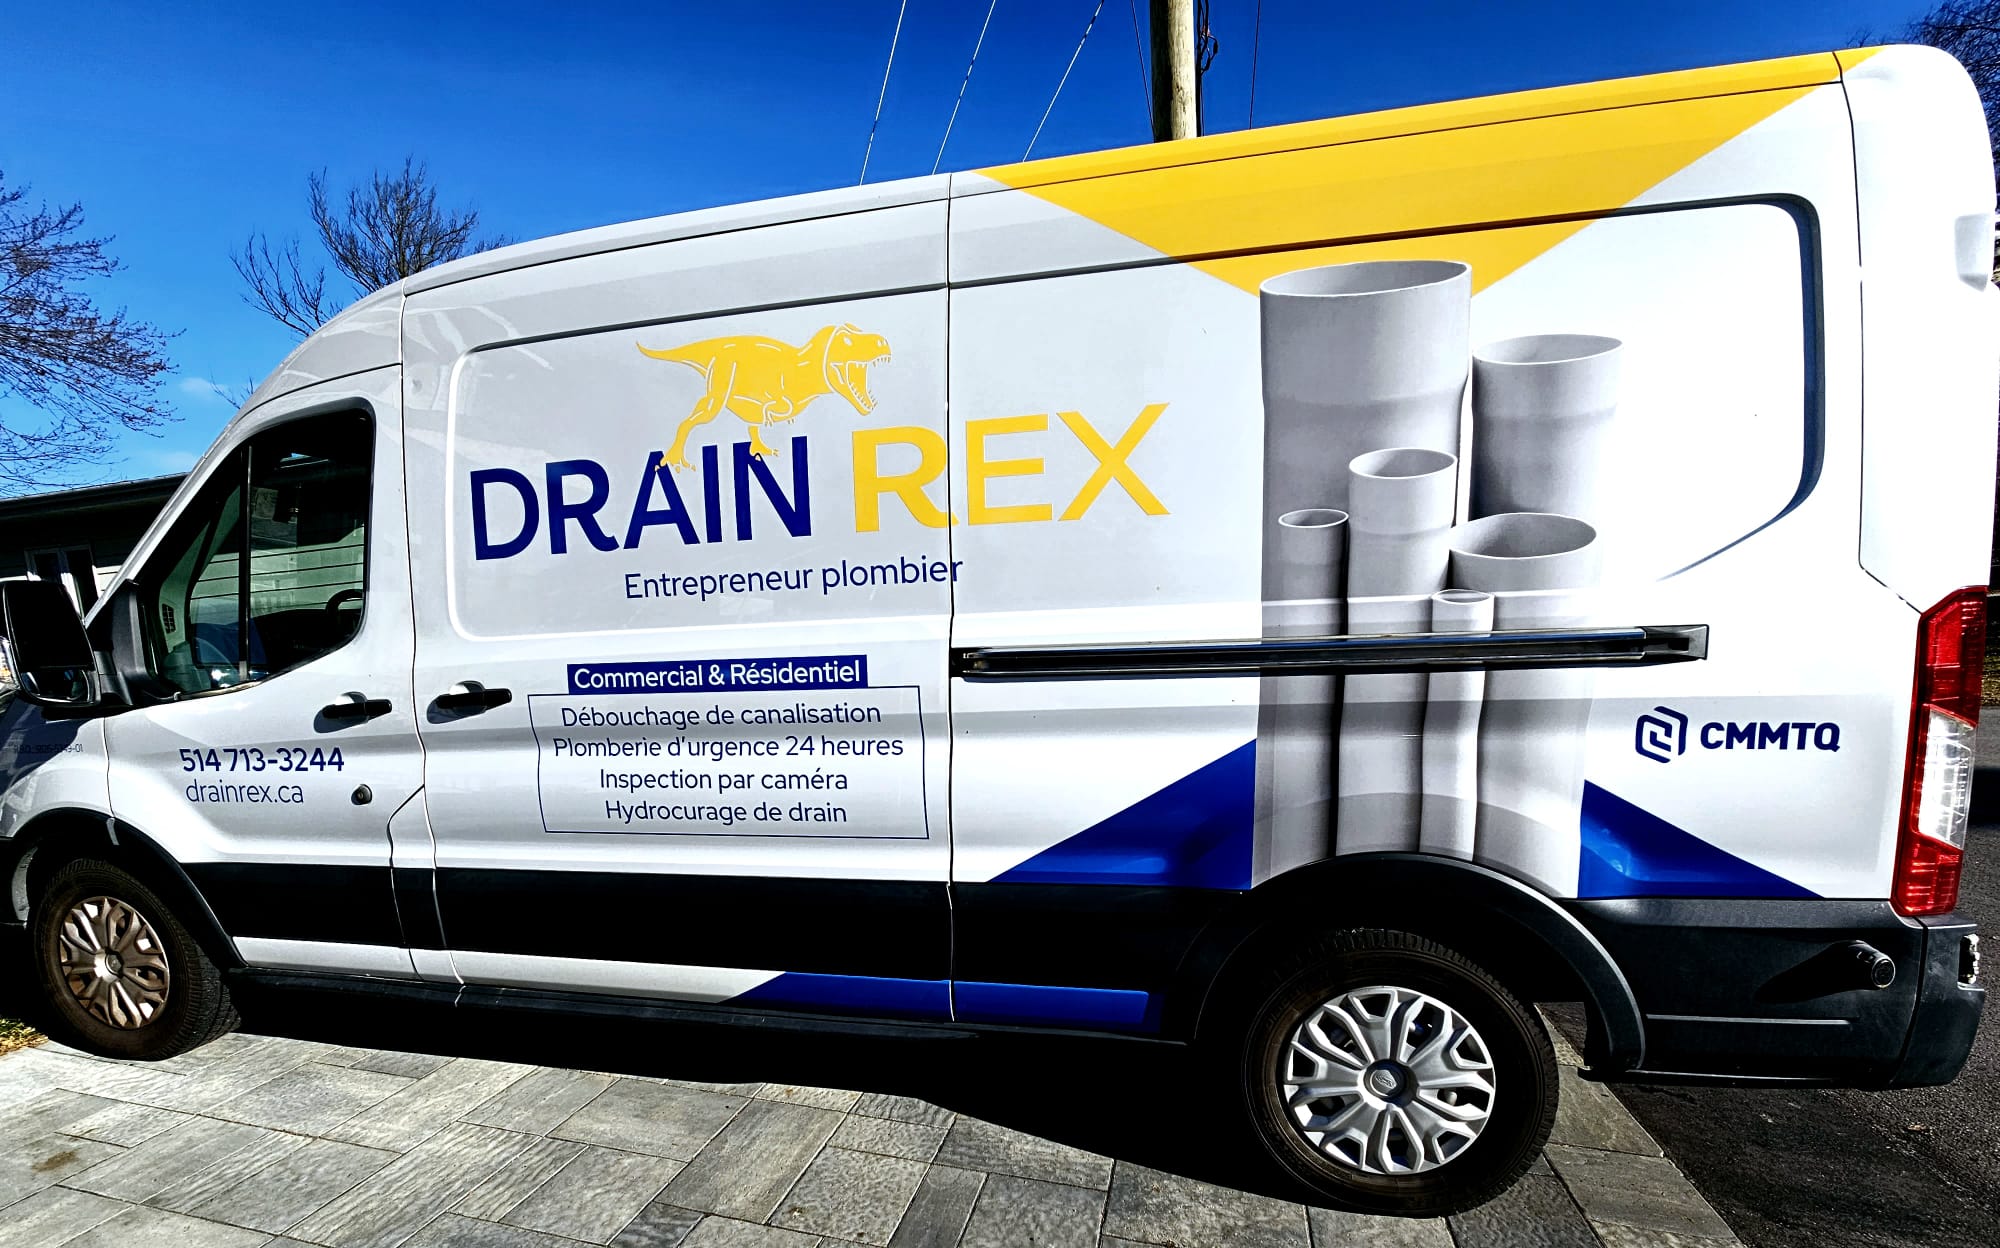 Drain Rex, entrepreneur plombier